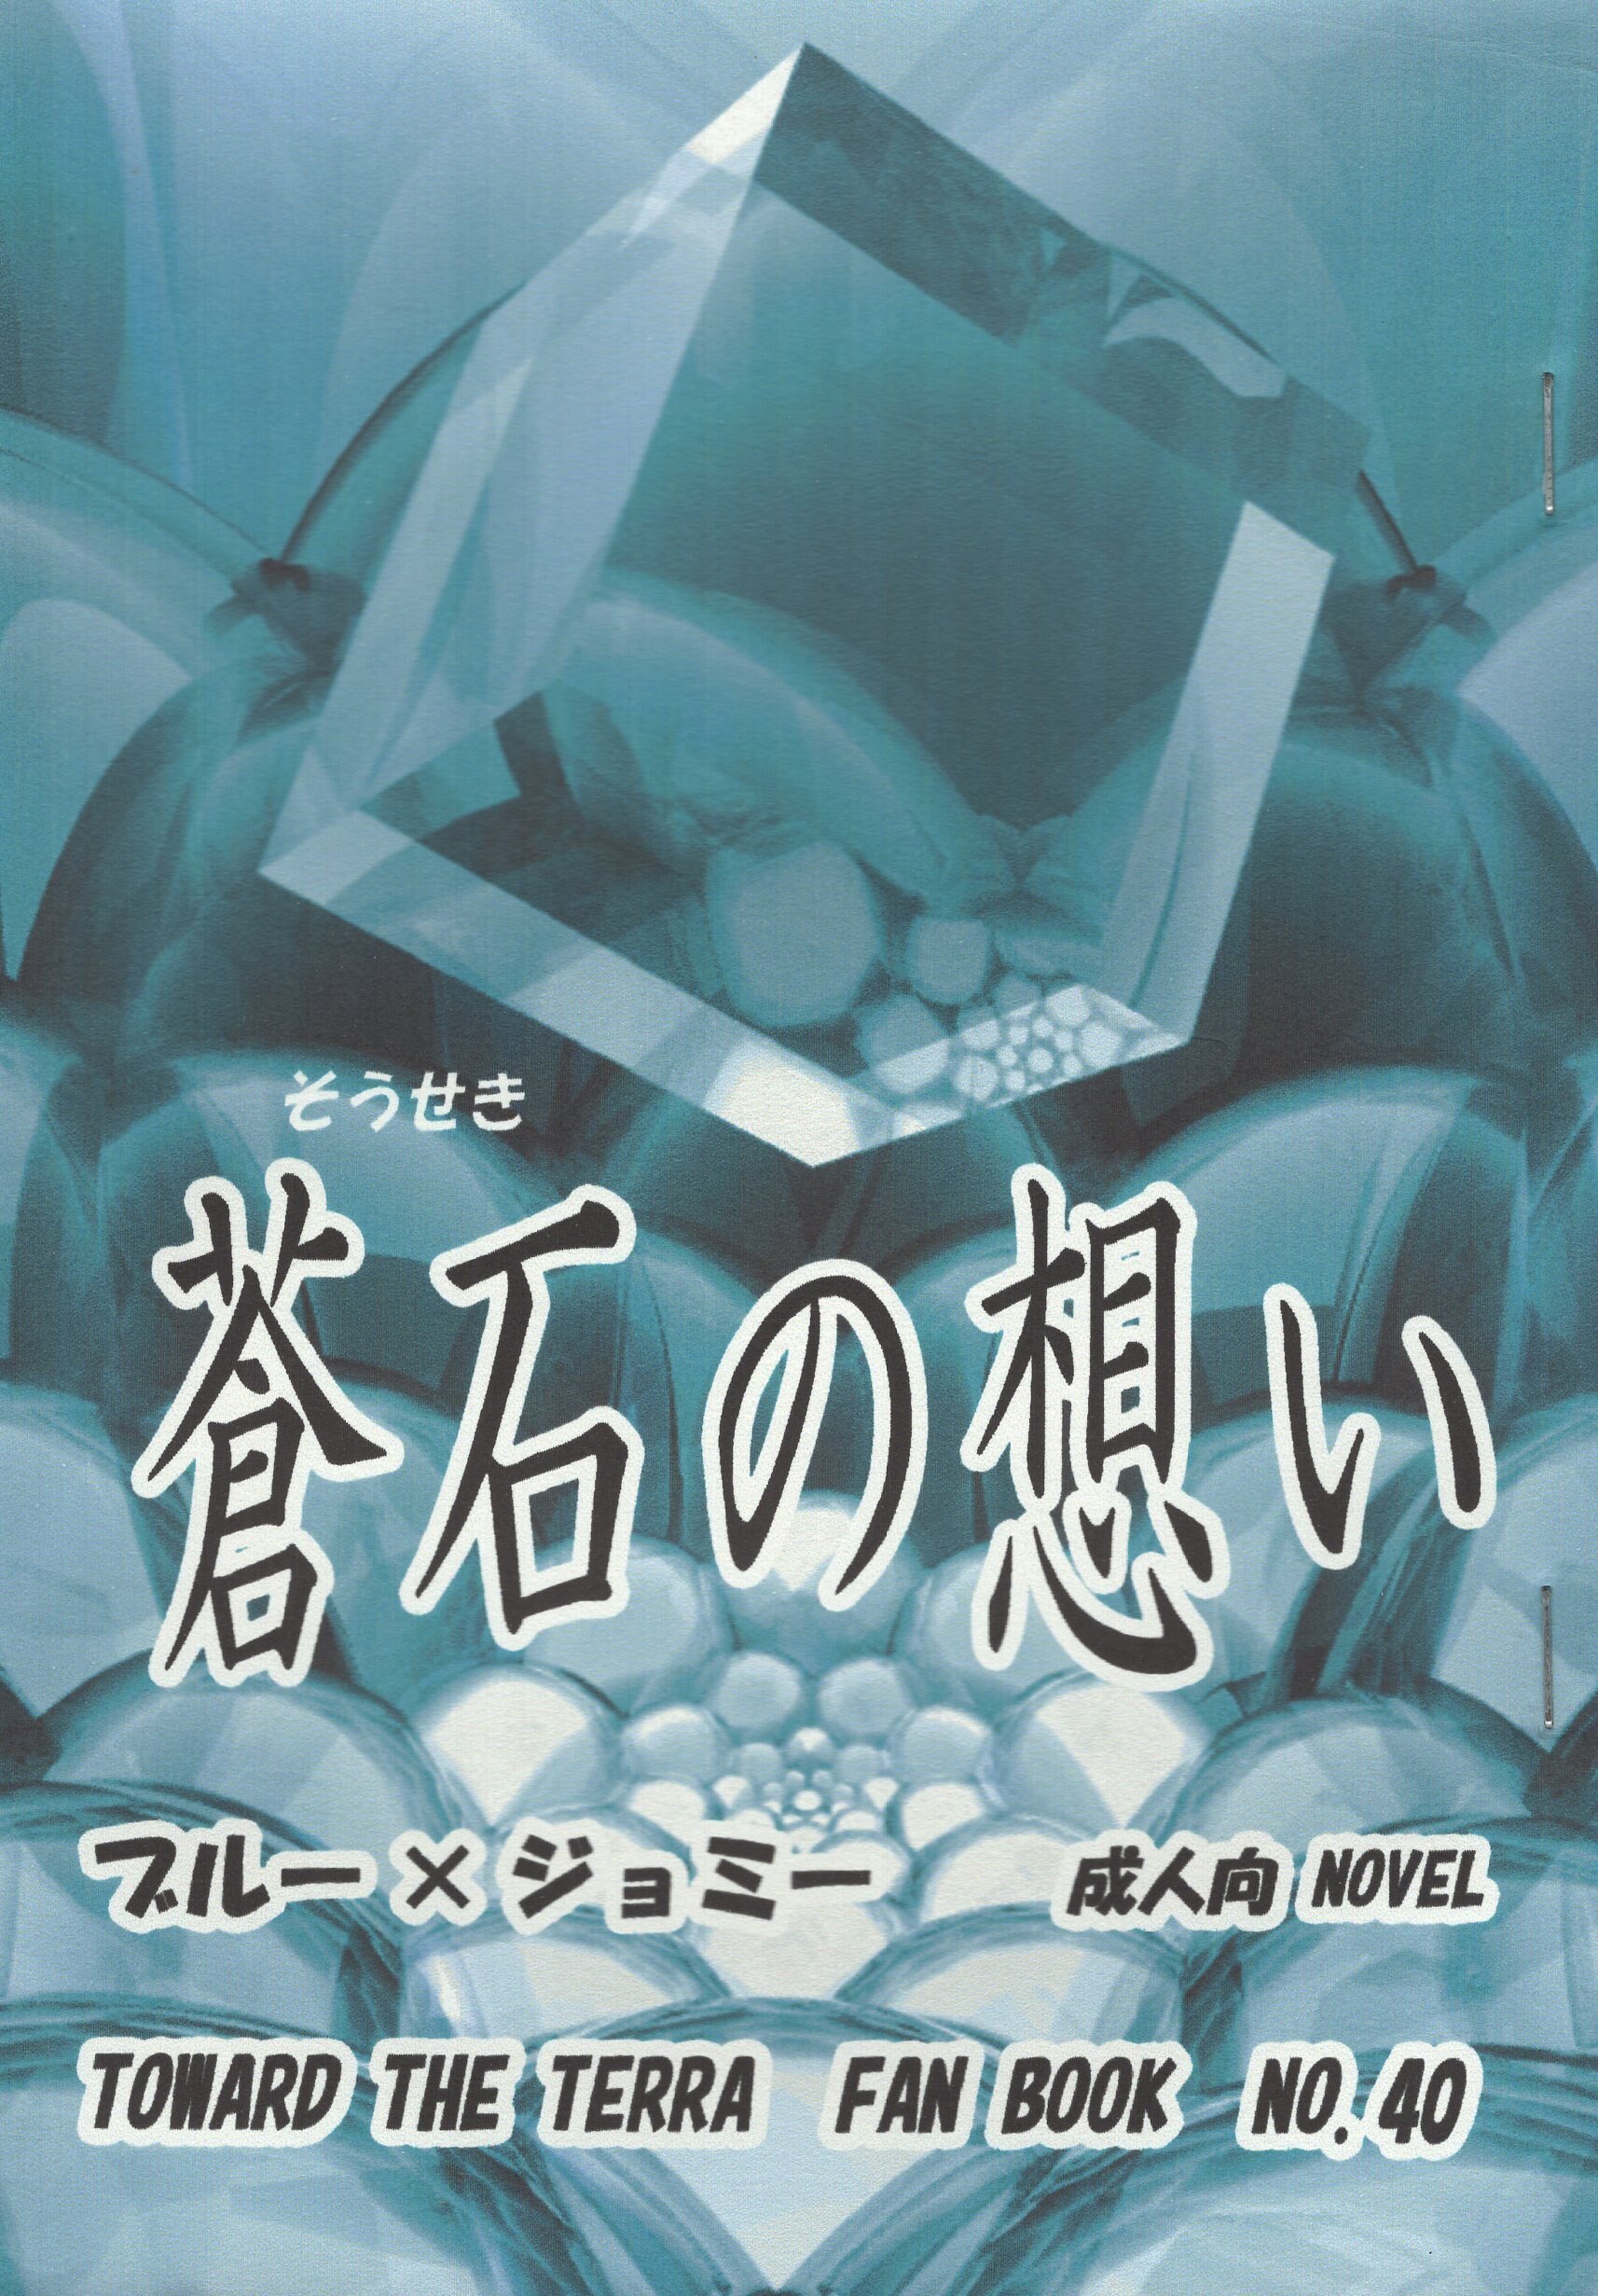 [Boys Love (Yaoi) : R18] Doujinshi - Toward the Terra / Terra he... / Soldier Blue x Jomy Marcus Shin (蒼石の想い *コピー) / 冬華